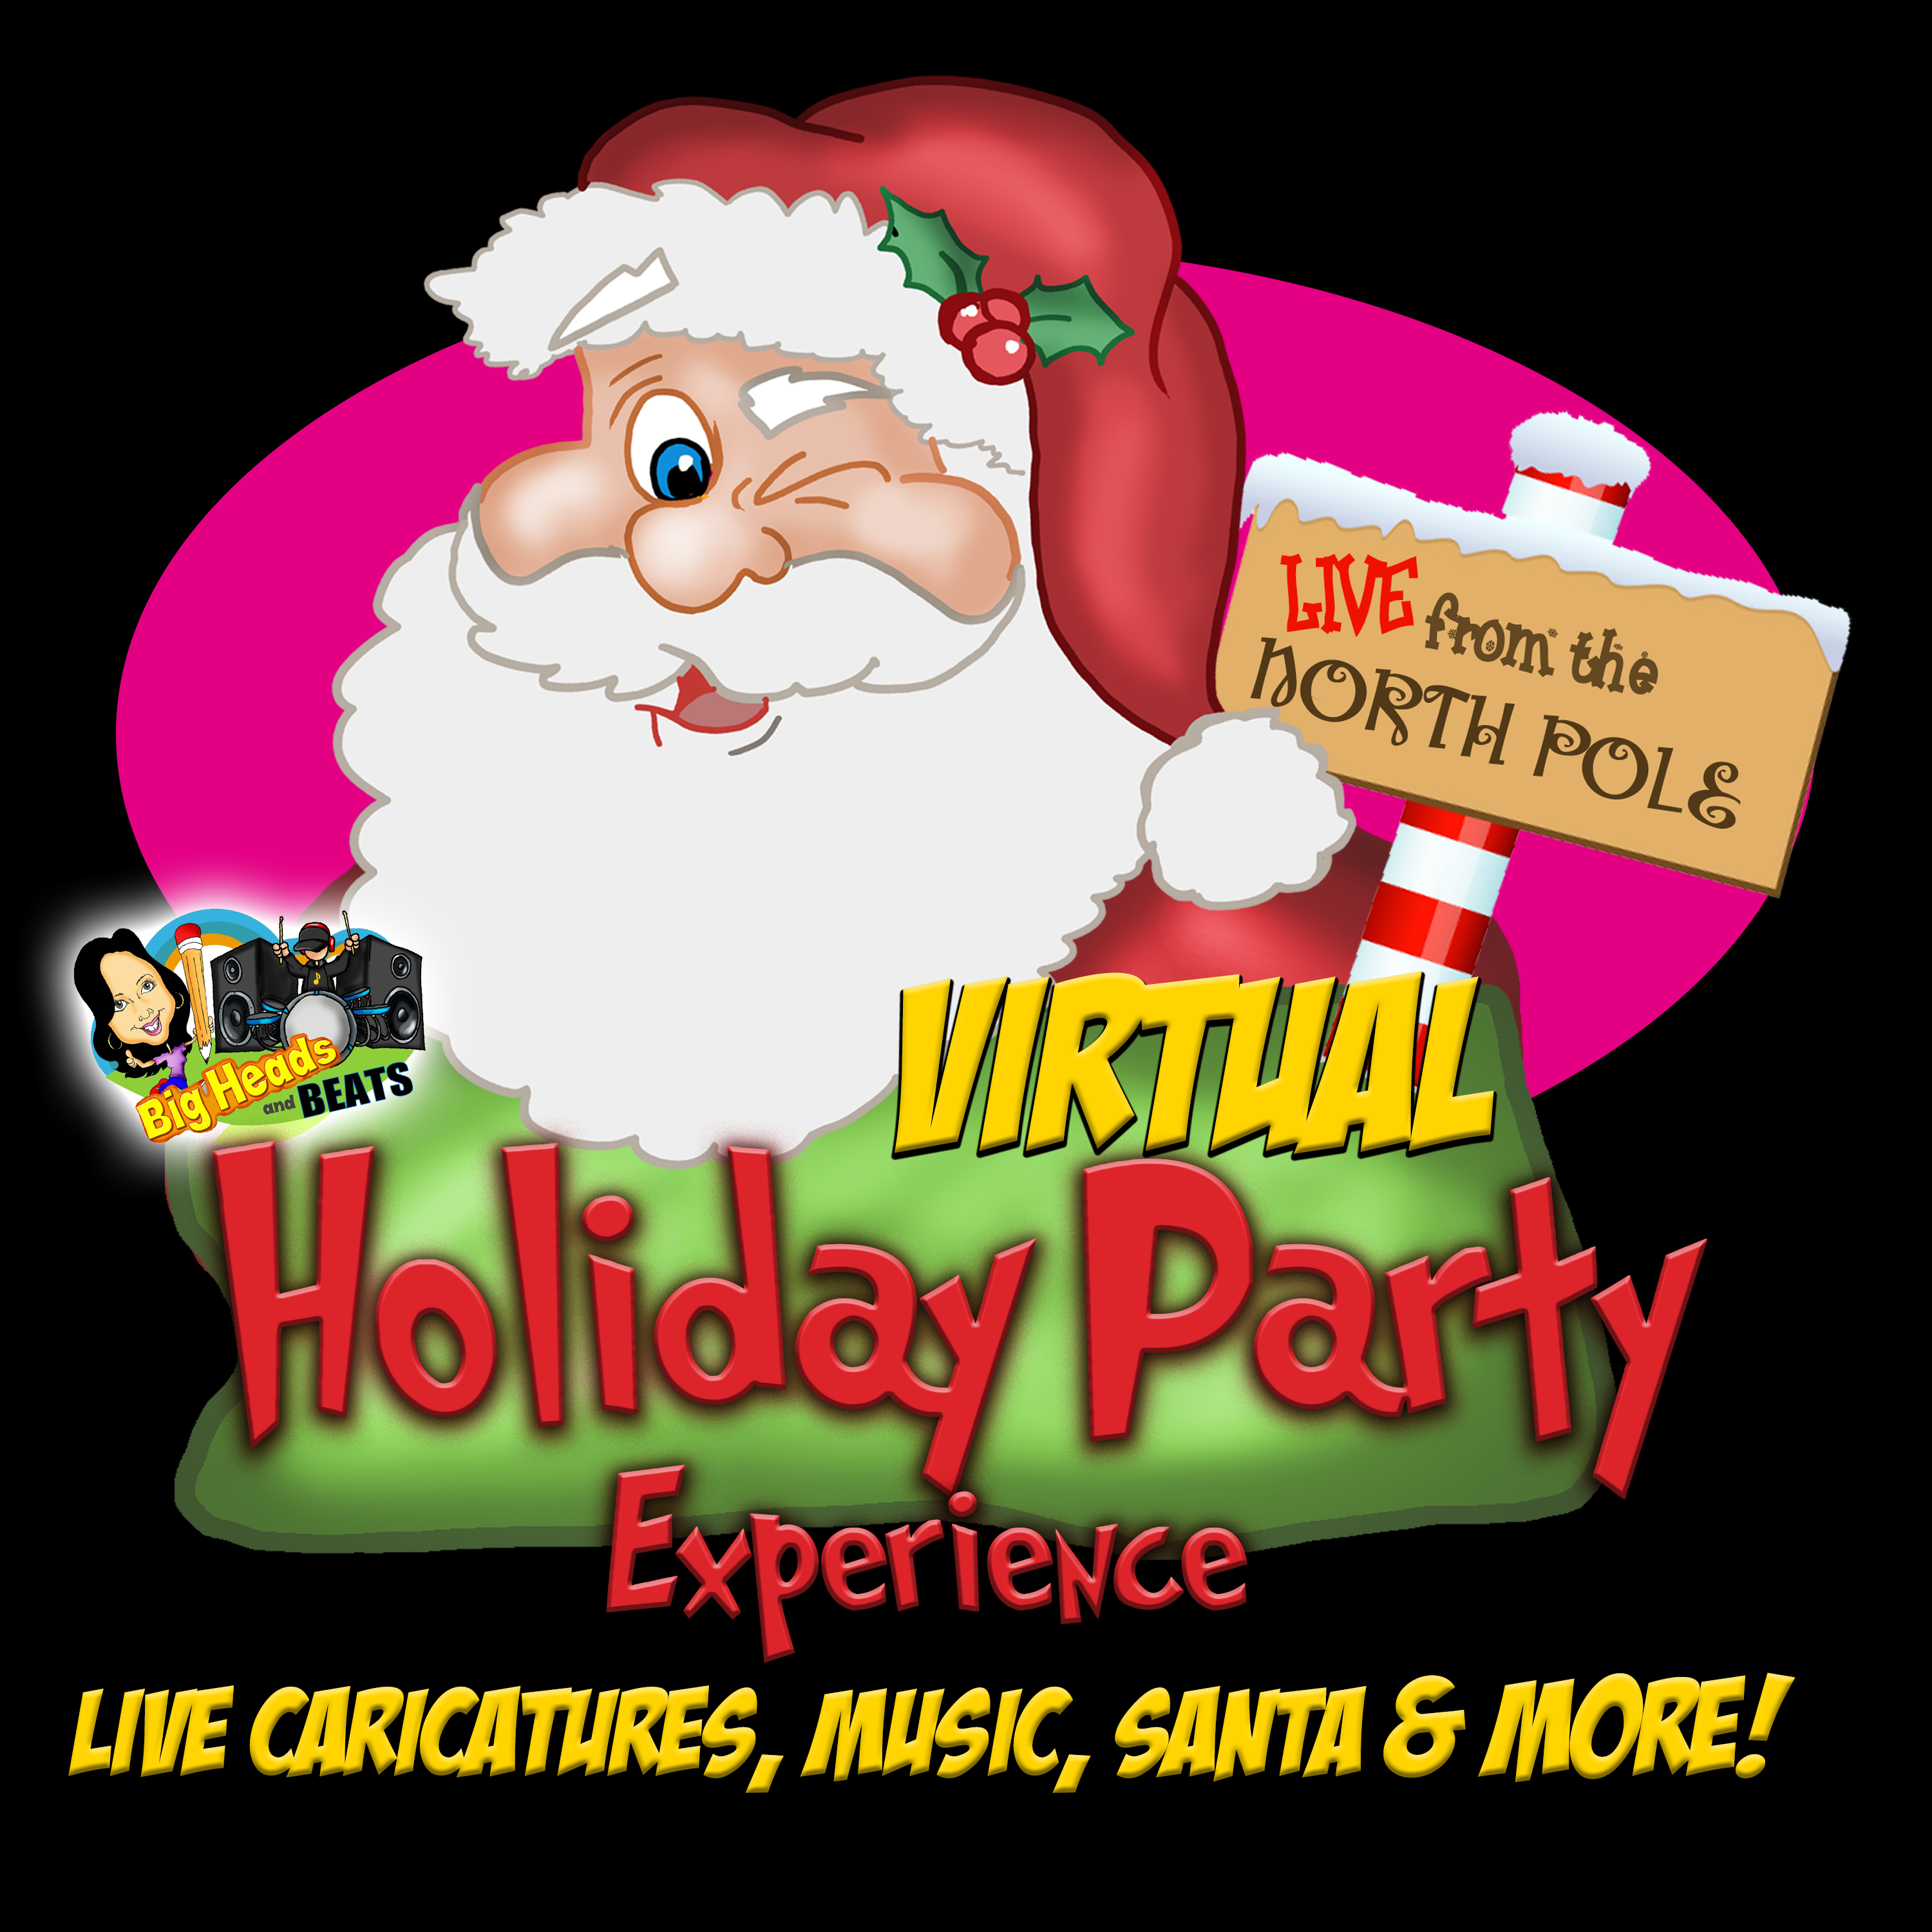 Virtual Holiday Party Ideas, Virtual Holiday Party, Zoom Holiday Party, Virtual Santa, Virtual Caricatures, Virtual Holiday, Zoom Party, Virtual Entertainment